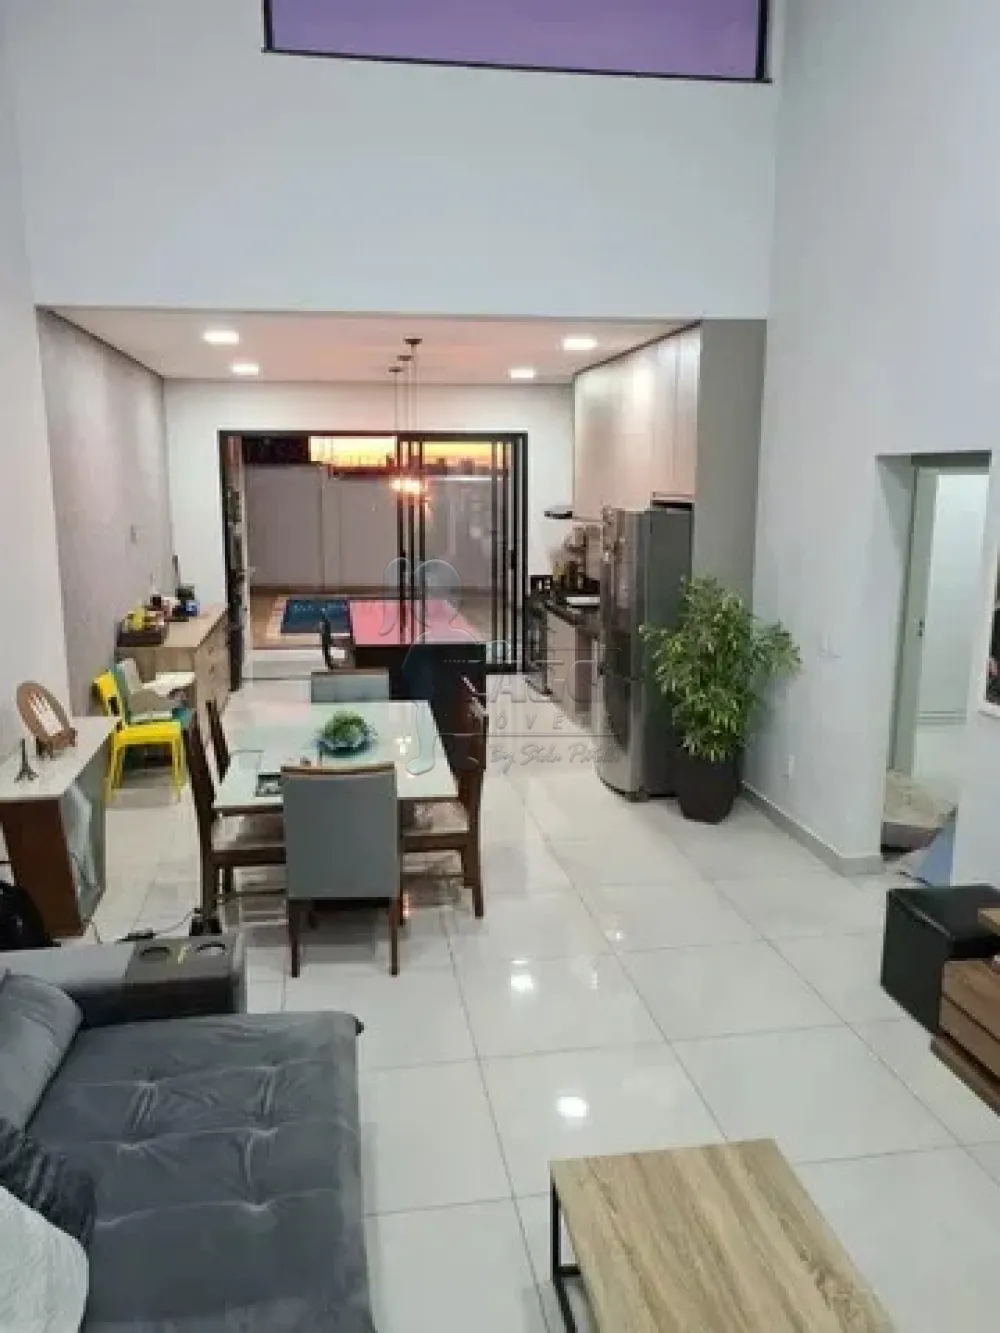 Comprar Casa condomínio / Padrão em Bonfim Paulista R$ 1.050.000,00 - Foto 1